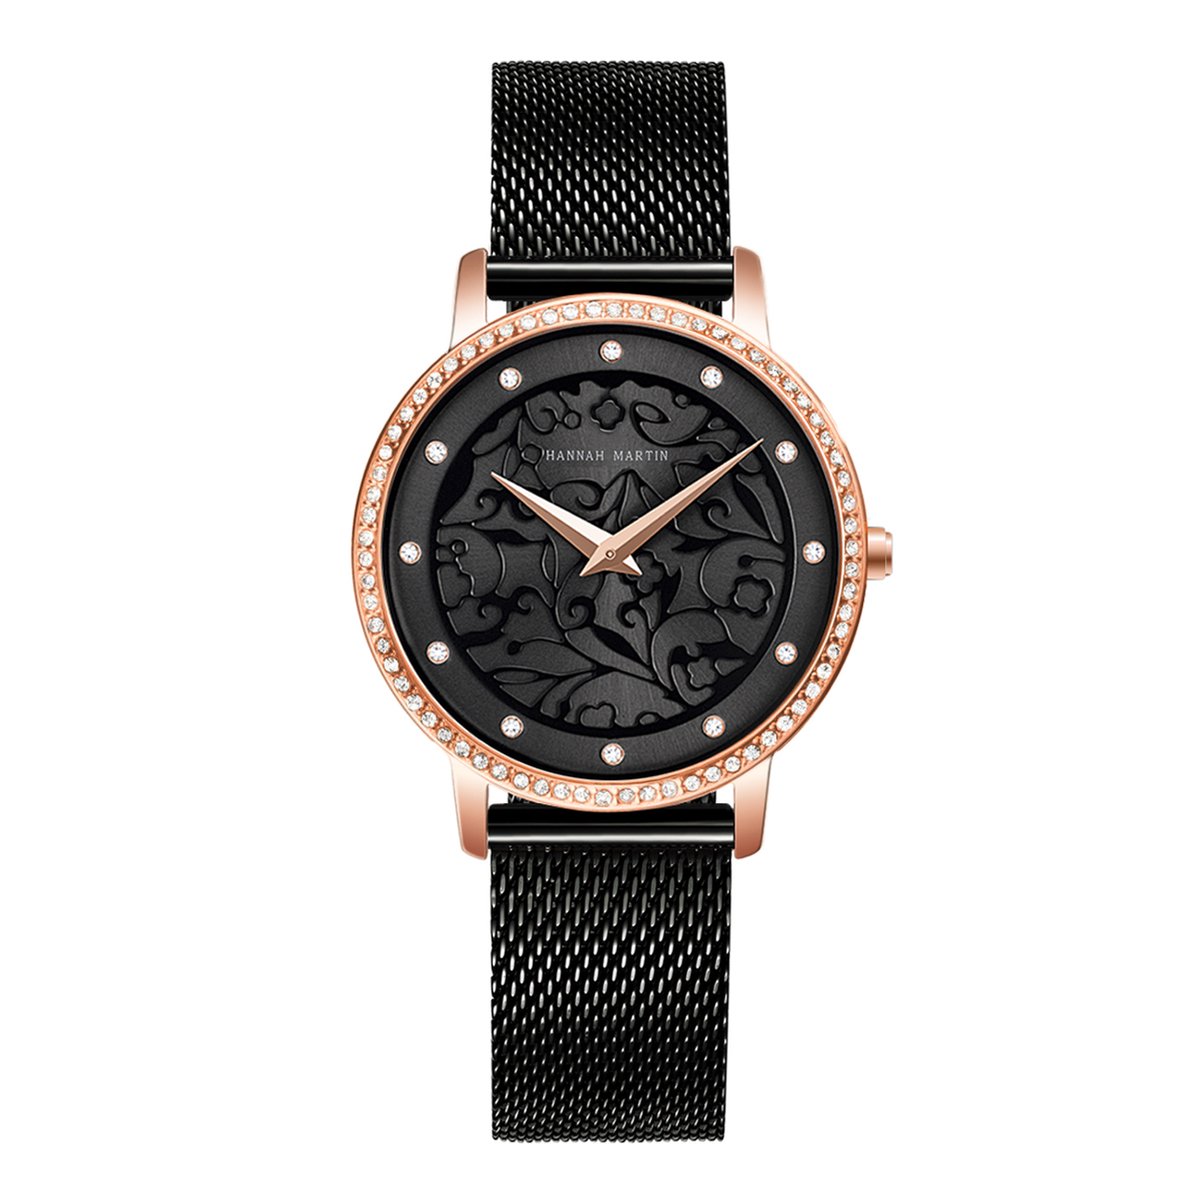 HANNAH MARTIN horloge met kristal diamantjes, zwarte stalen polsband, zwarte wijzerplaat, gouden horlogekast en gouden wijzers voor dames met stijl ( model 1073 H-WFH )